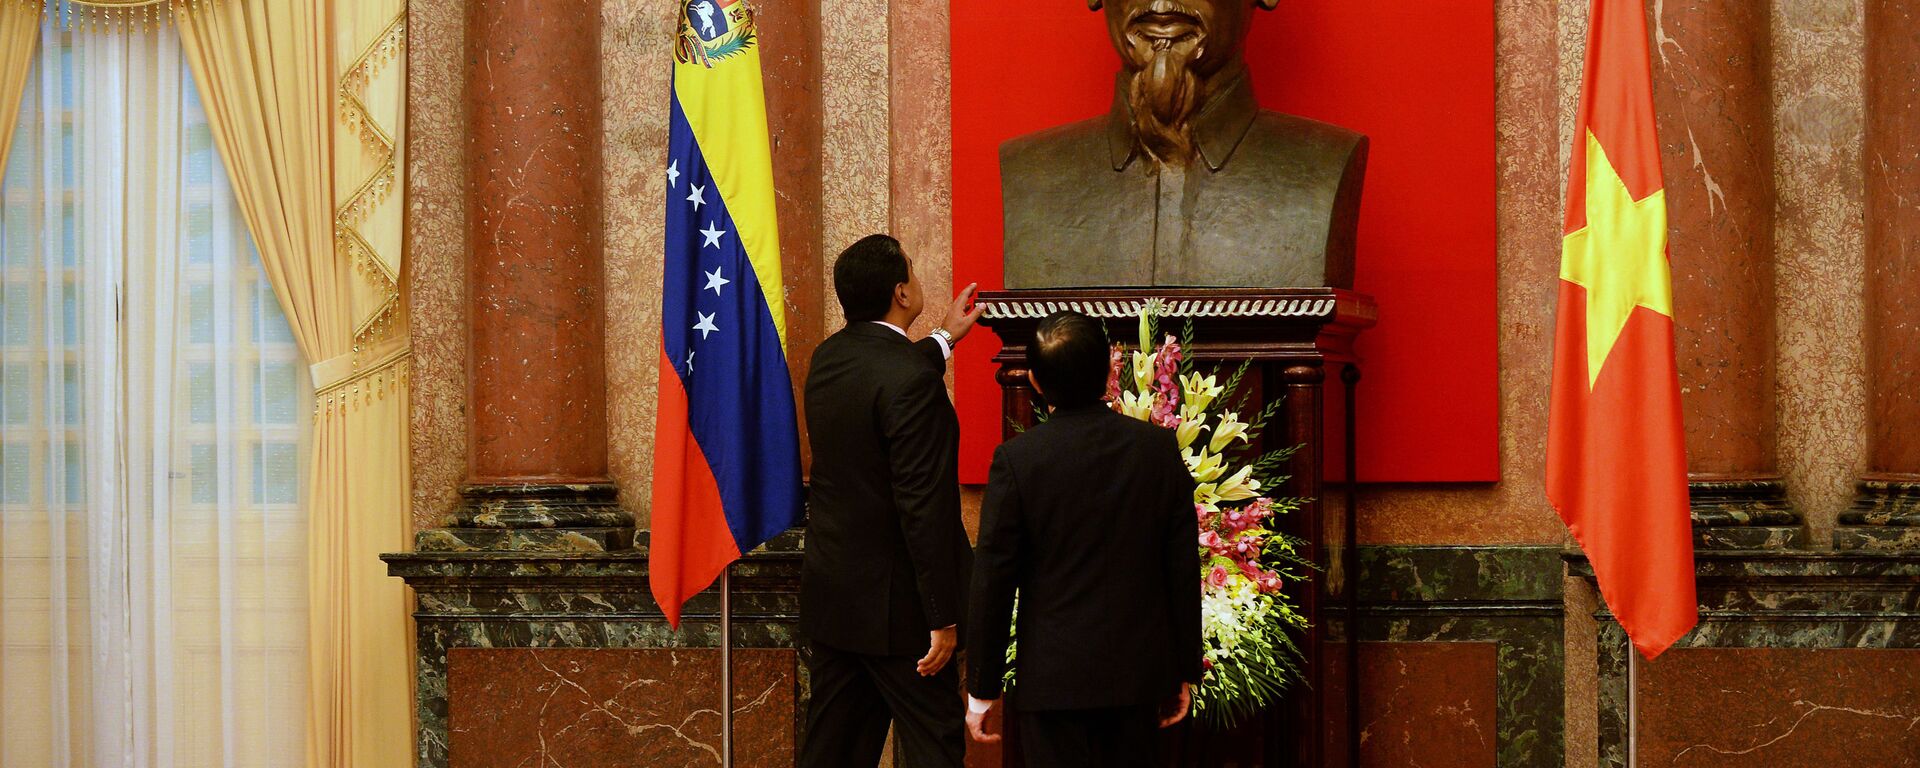 Los presidentes de Venezuela y Vietnam, Nicolás Maduro yTruong Tan Sang, junto al busto de Ho Chi Minh - Sputnik Mundo, 1920, 02.09.2020